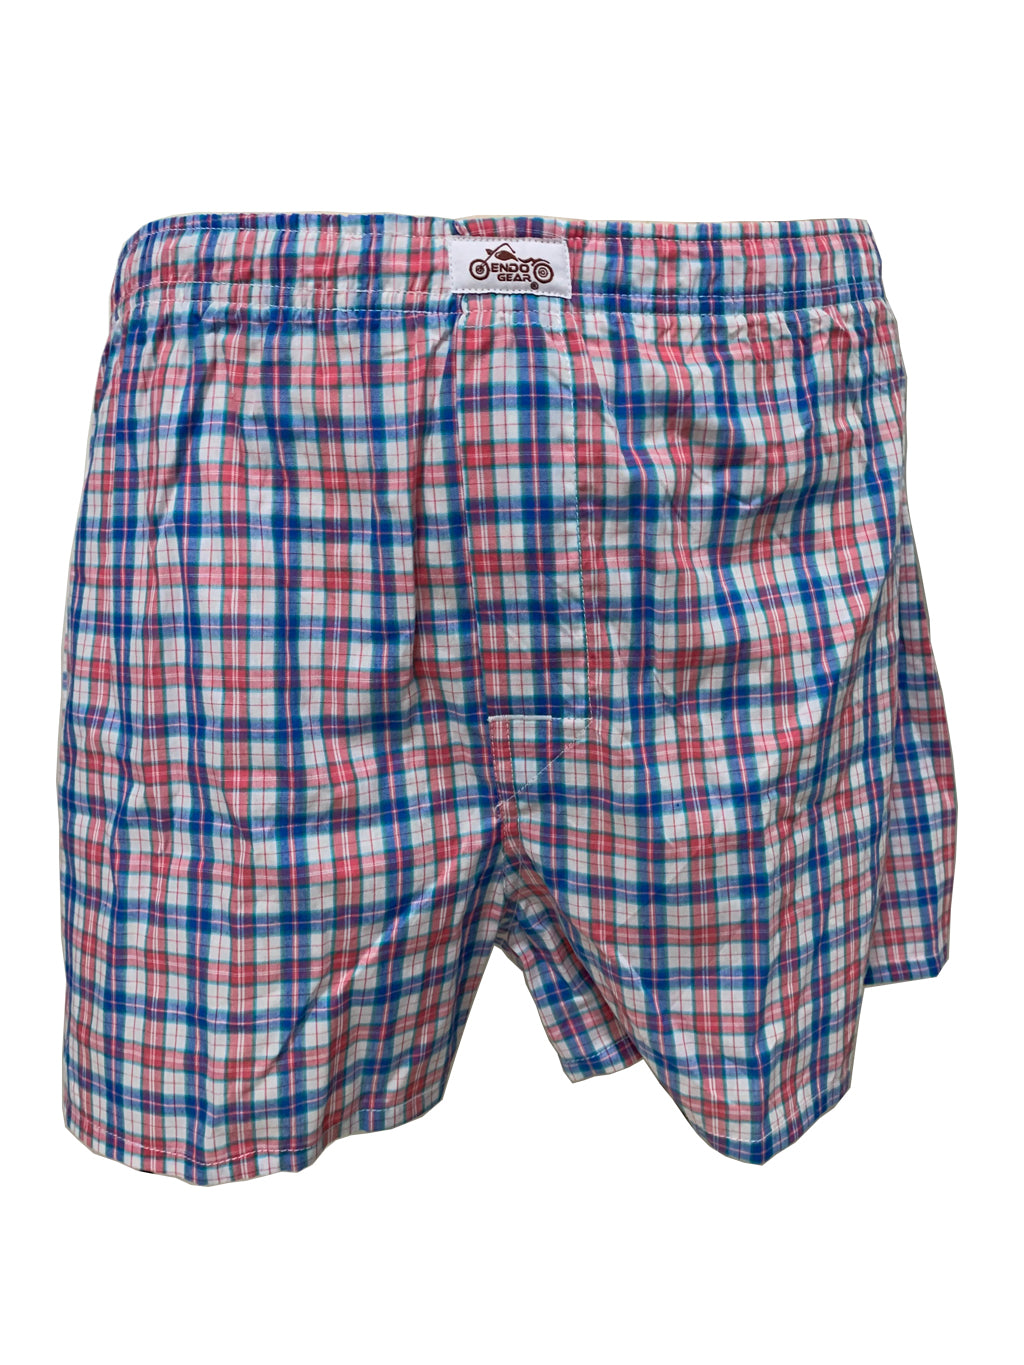 Men's Boxer Shorts | Cotton Boxer Shorts | EndoGear